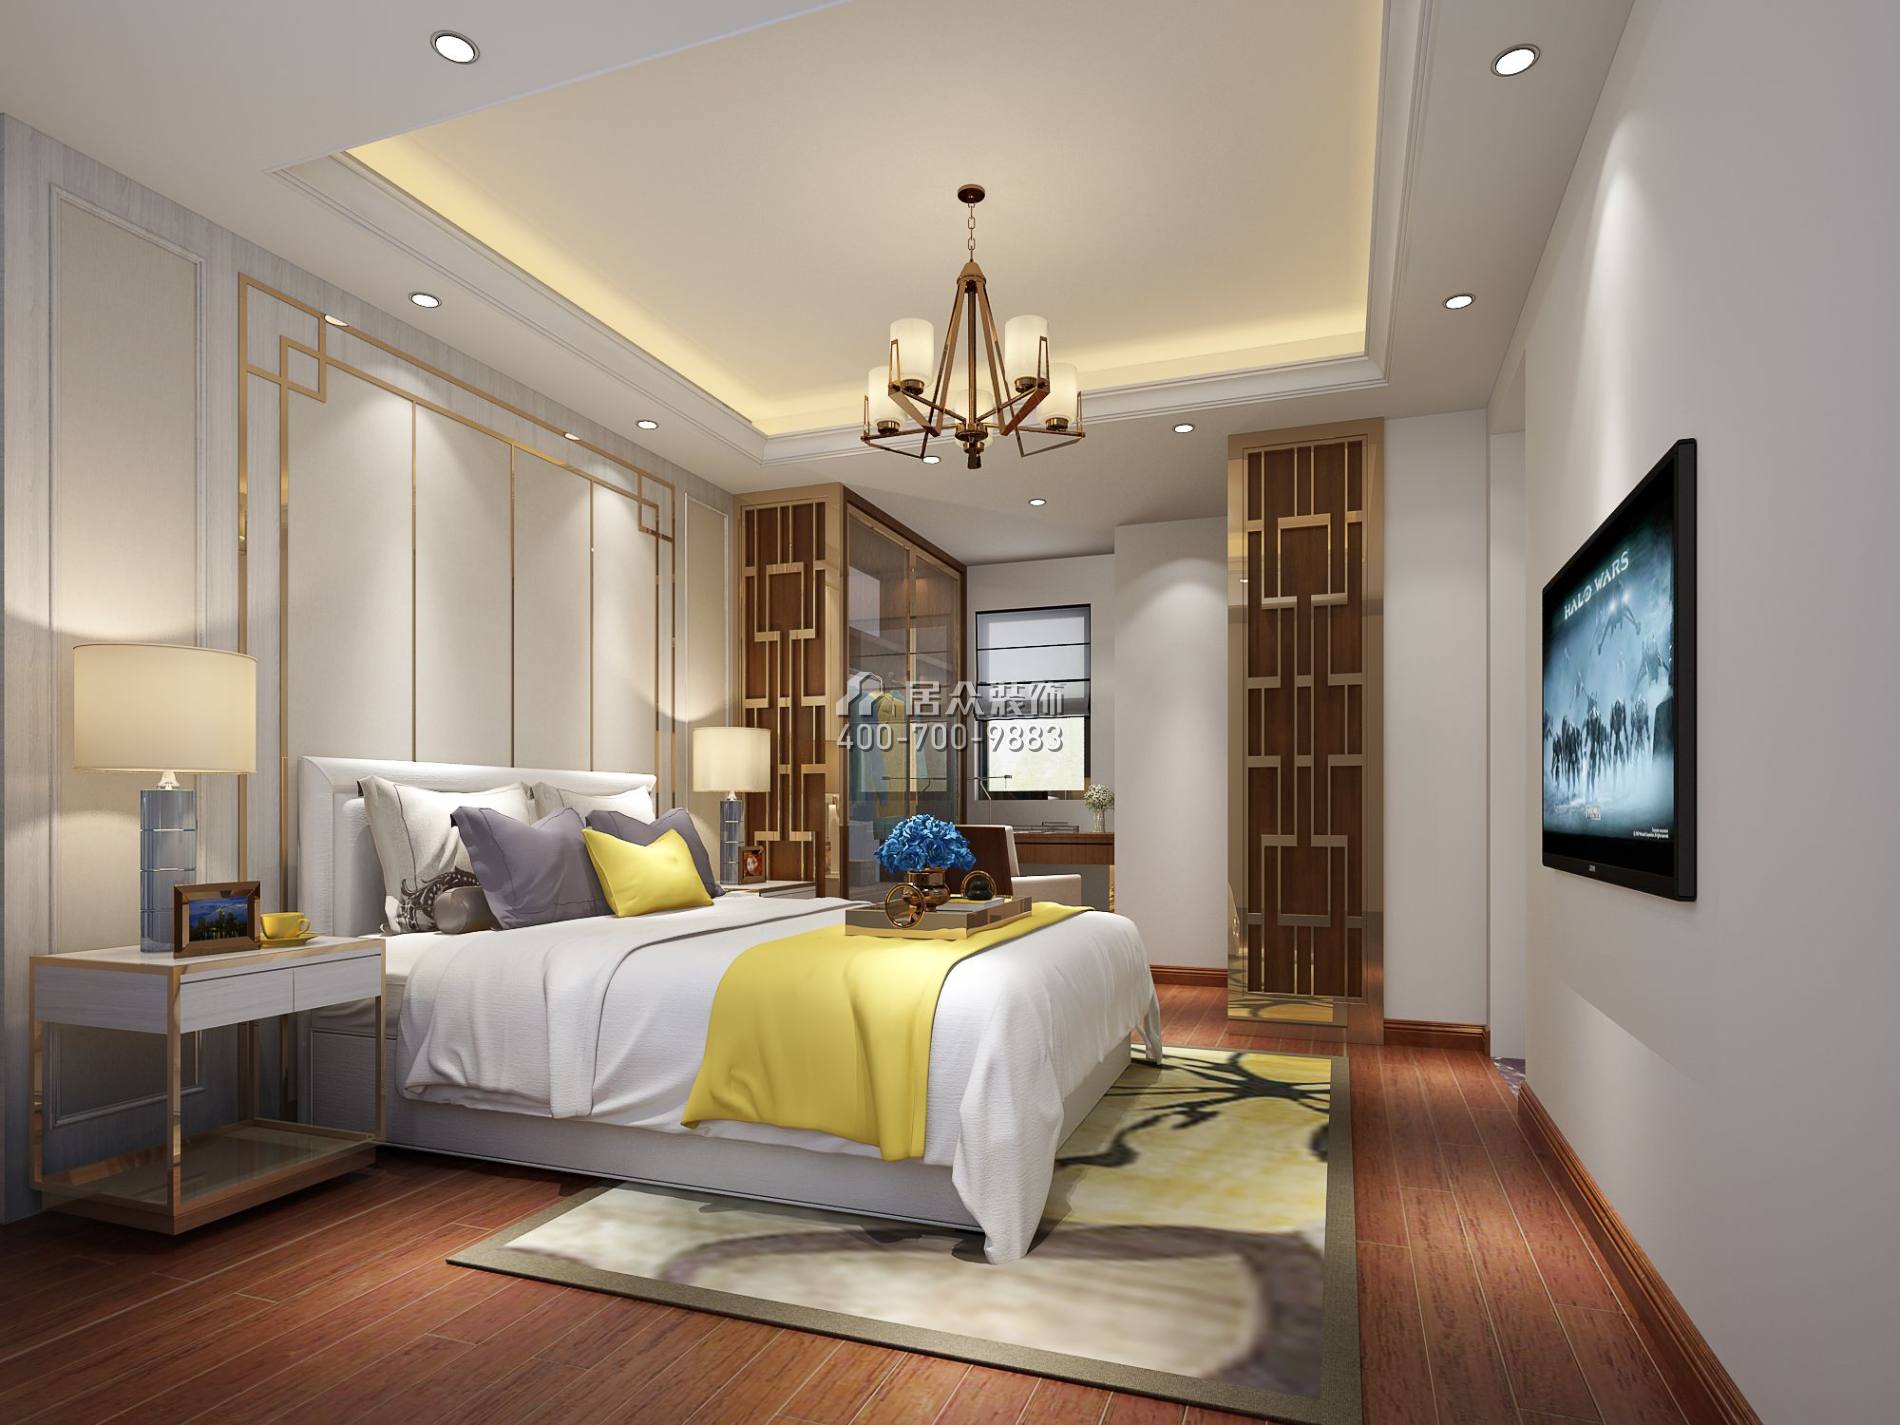 熙璟城109平方米中式风格平层户型卧室装修效果图